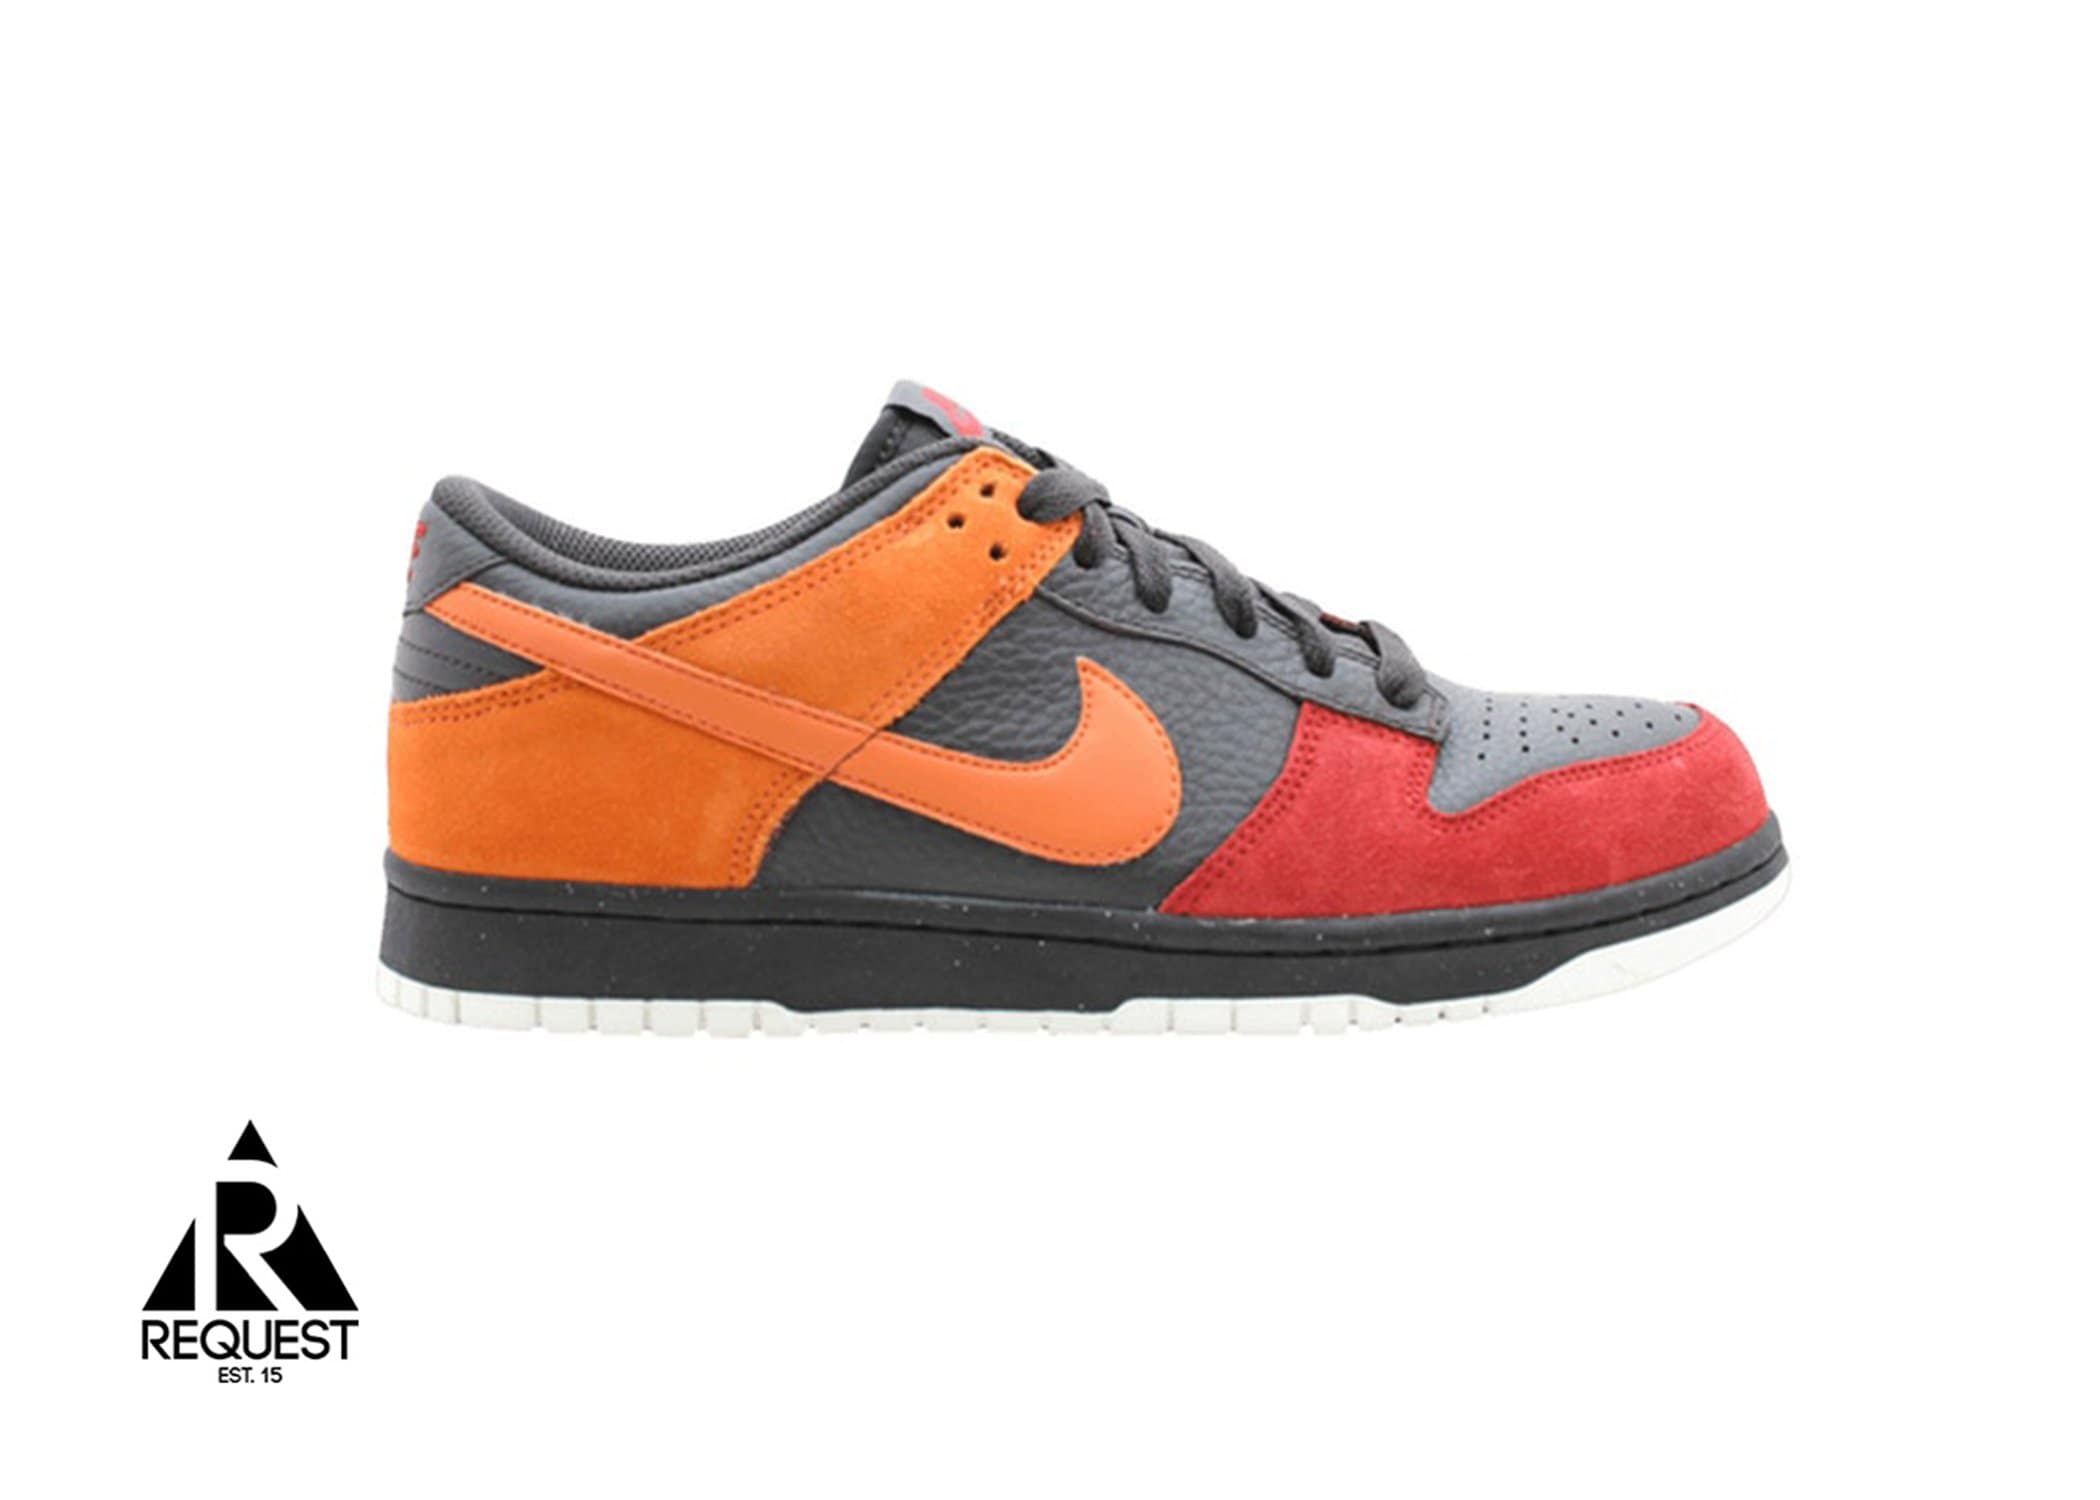 Nike Dunk SB low “Tar Orange”